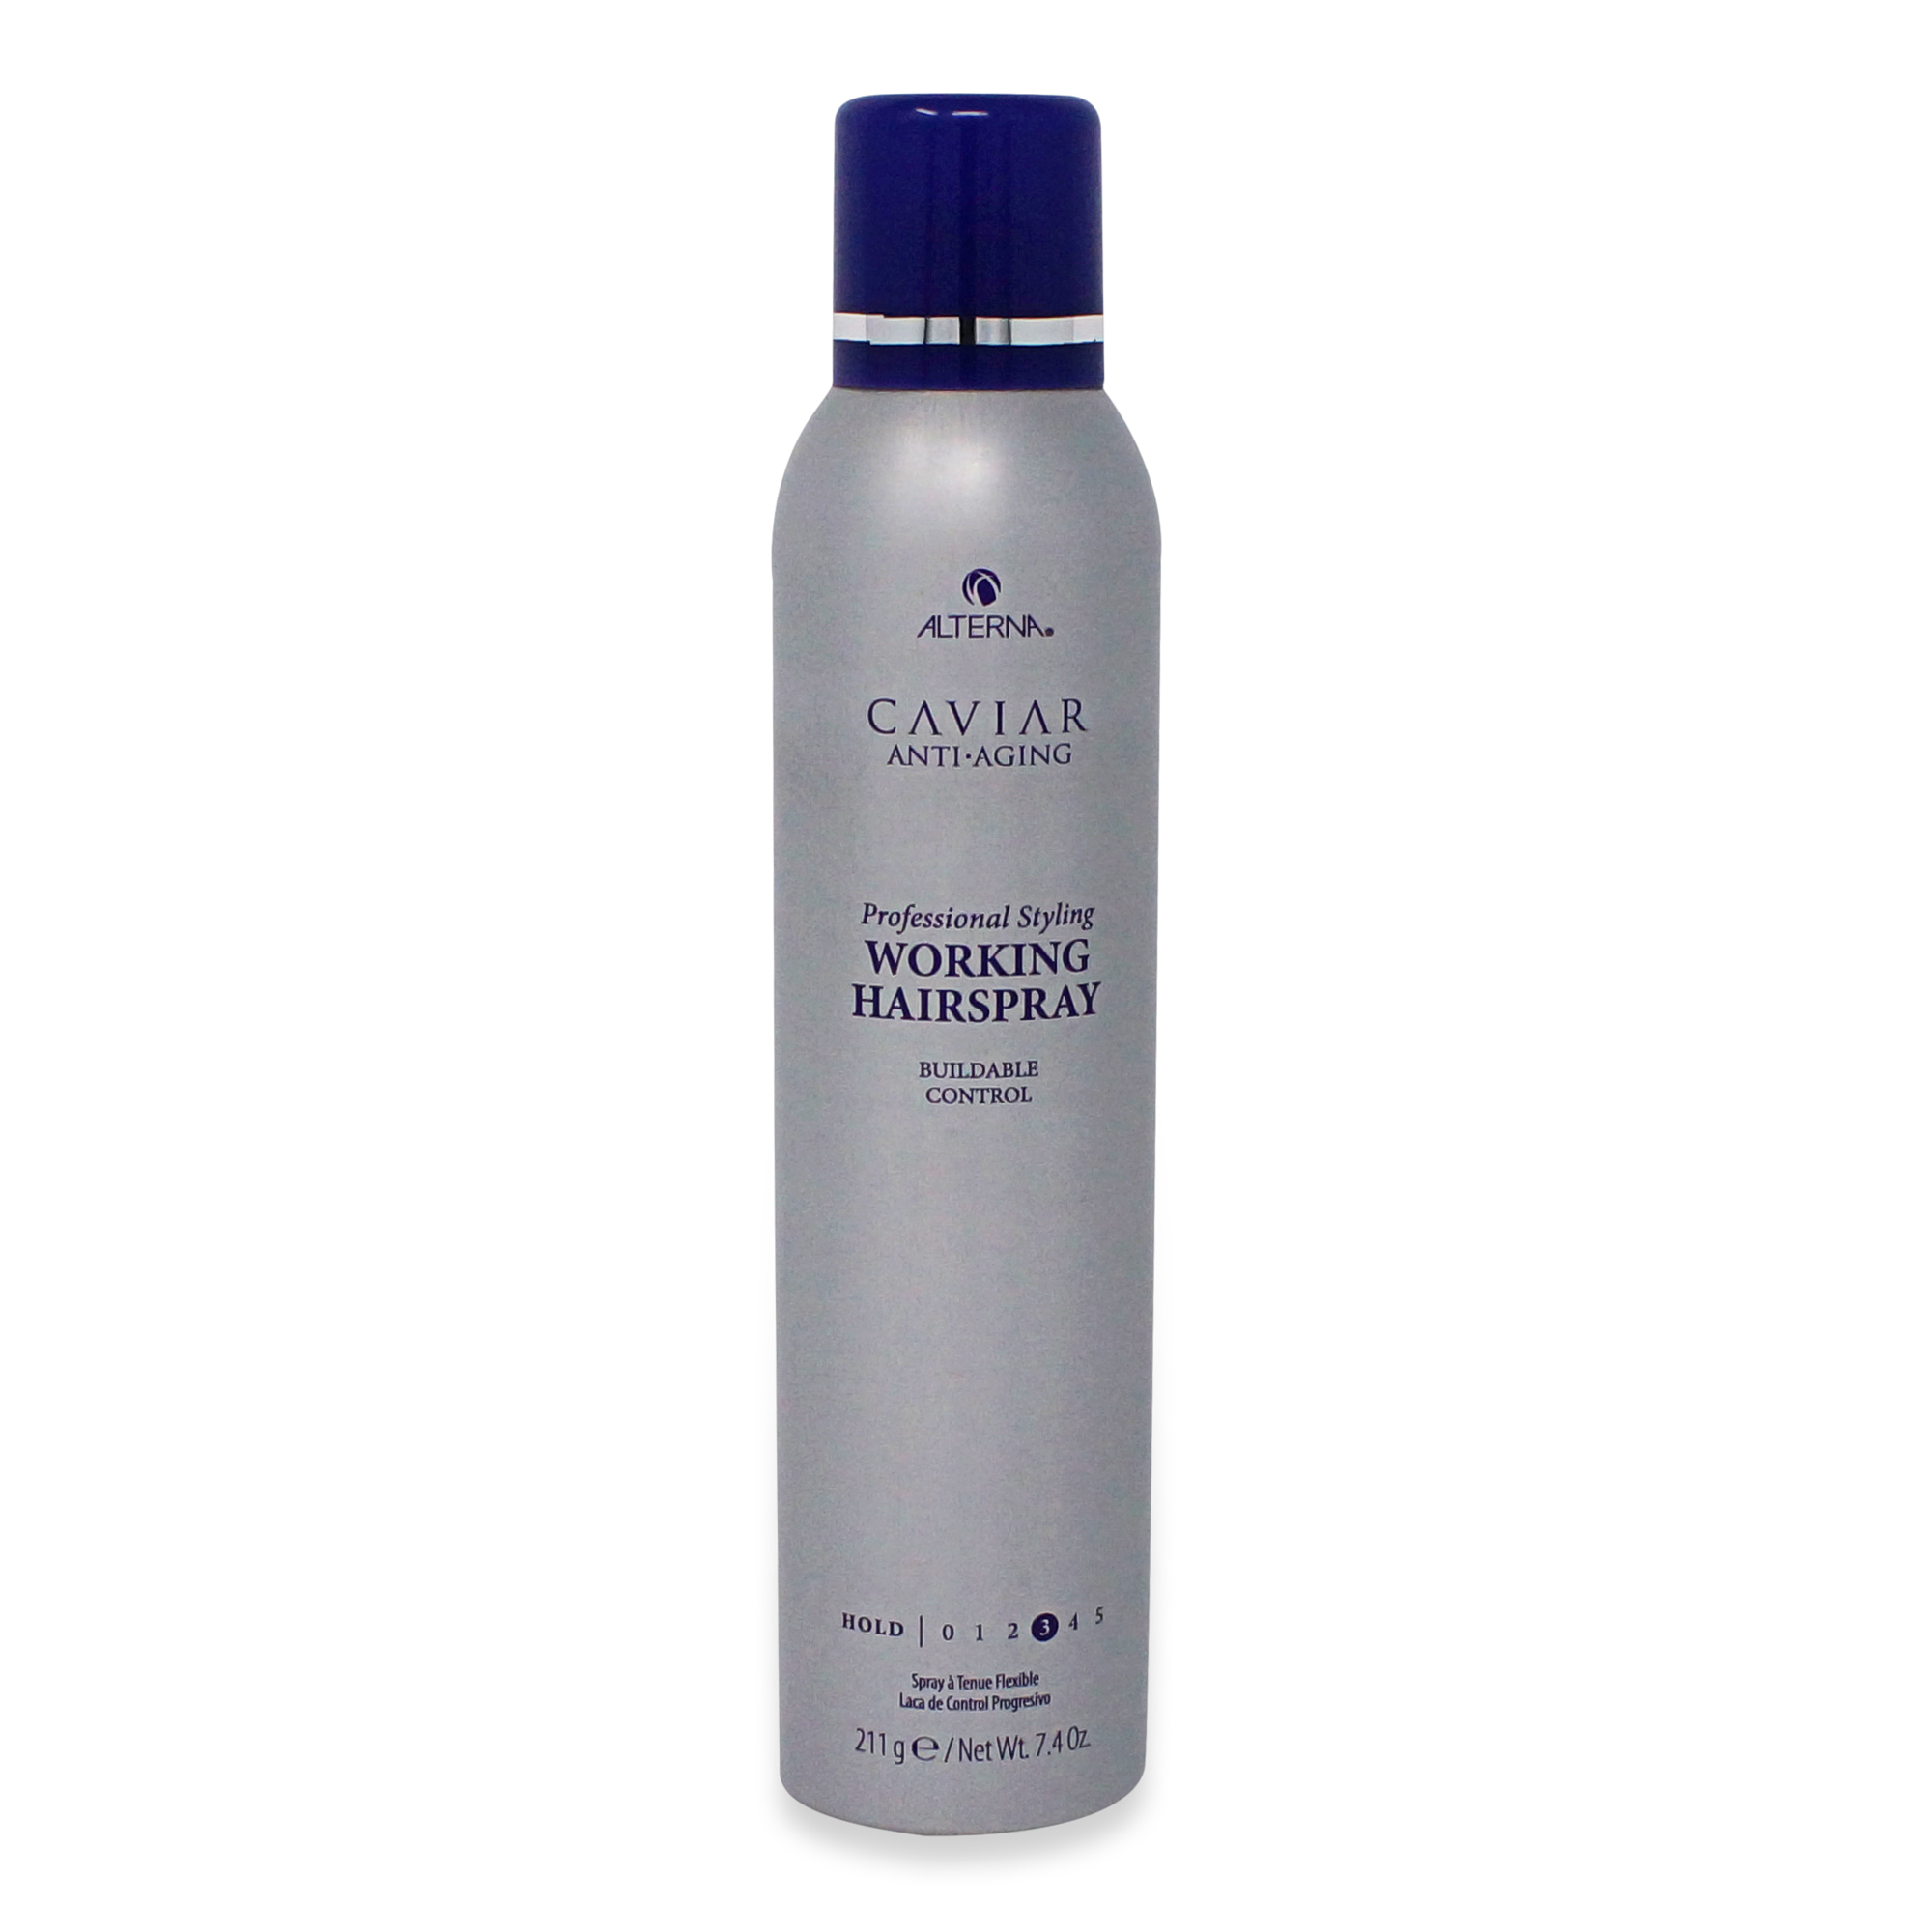 Alterna Caviar Anti-Aging Working Hair Spray, 7.4 oz. - image 1 of 3